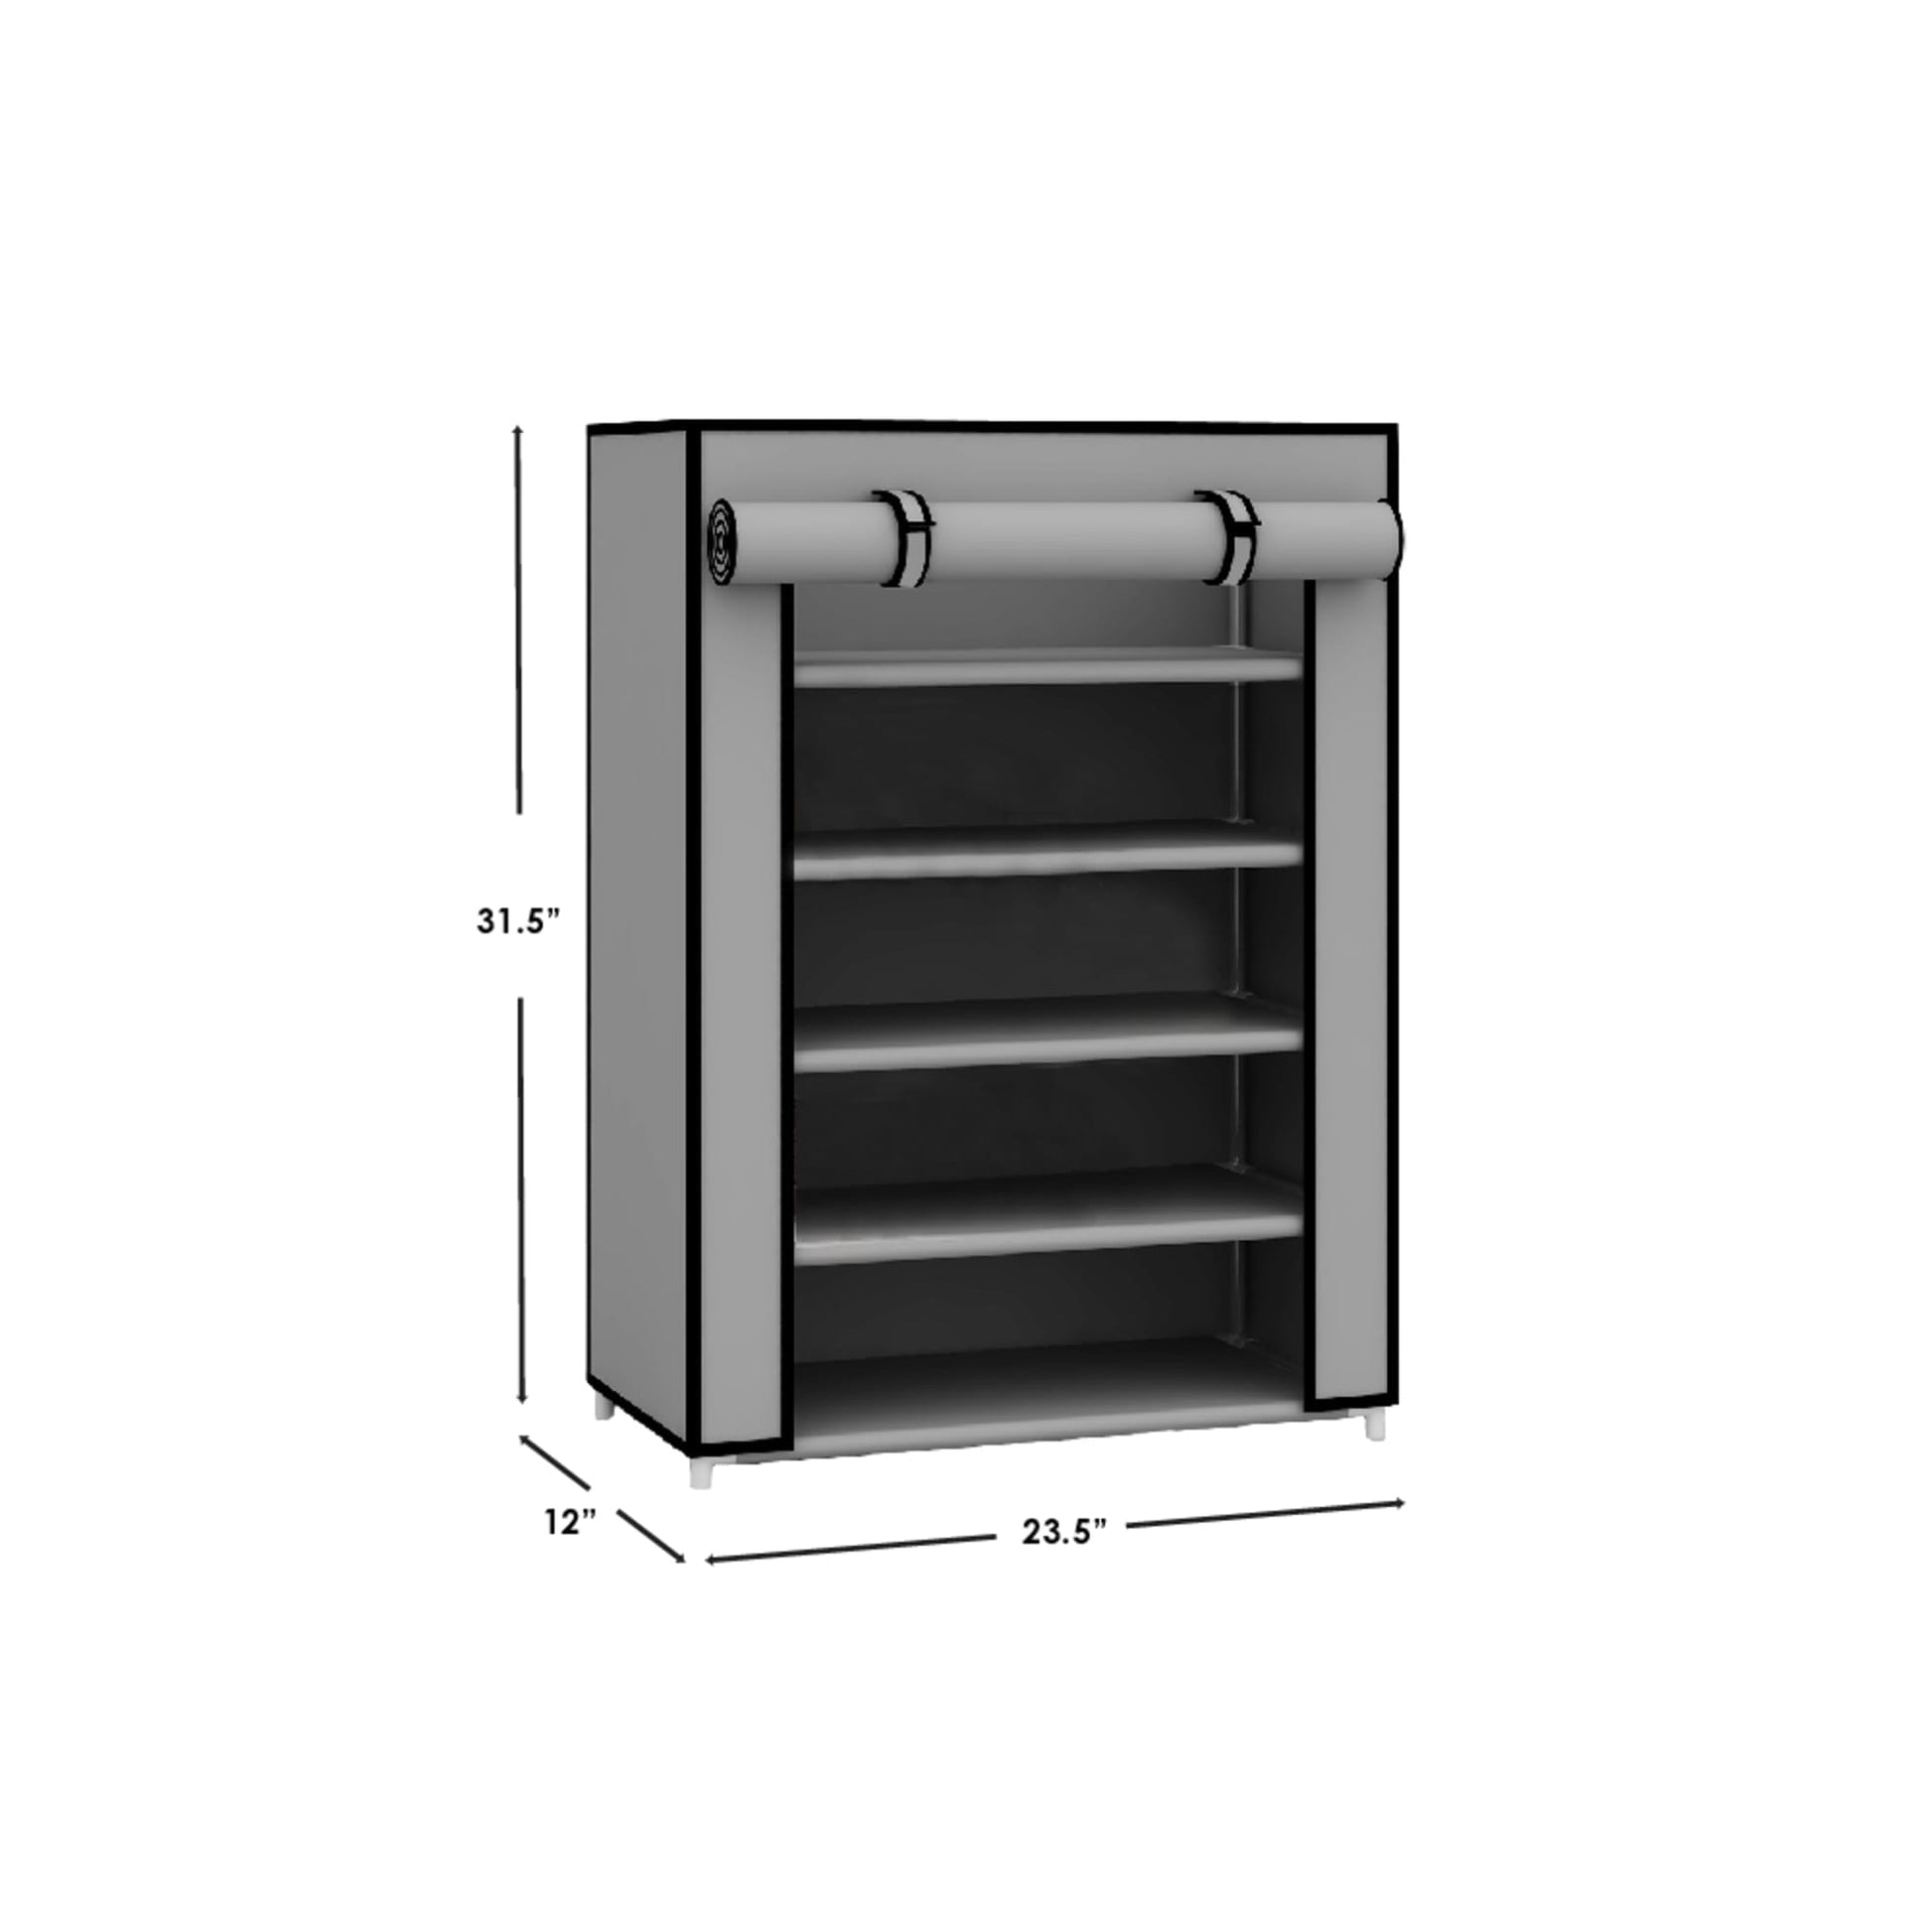  Simple Houseware 5-Tier Shoe Rack Storage Organizer, Grey :  Home & Kitchen